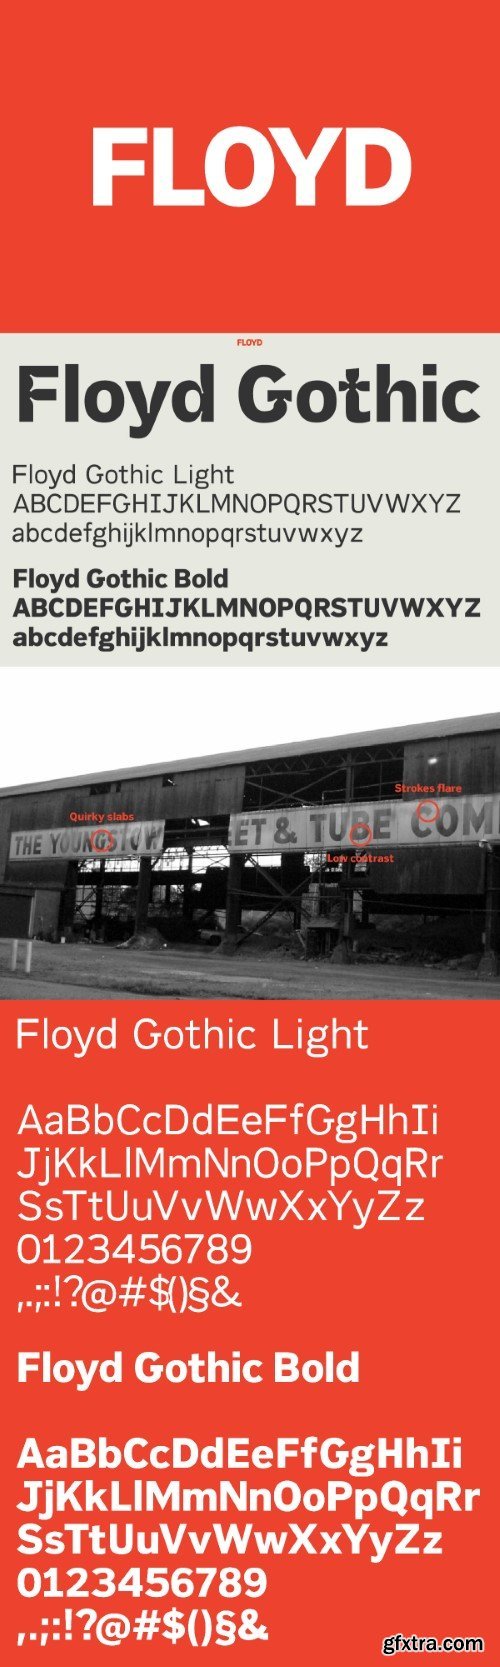 Floyd Gothic font